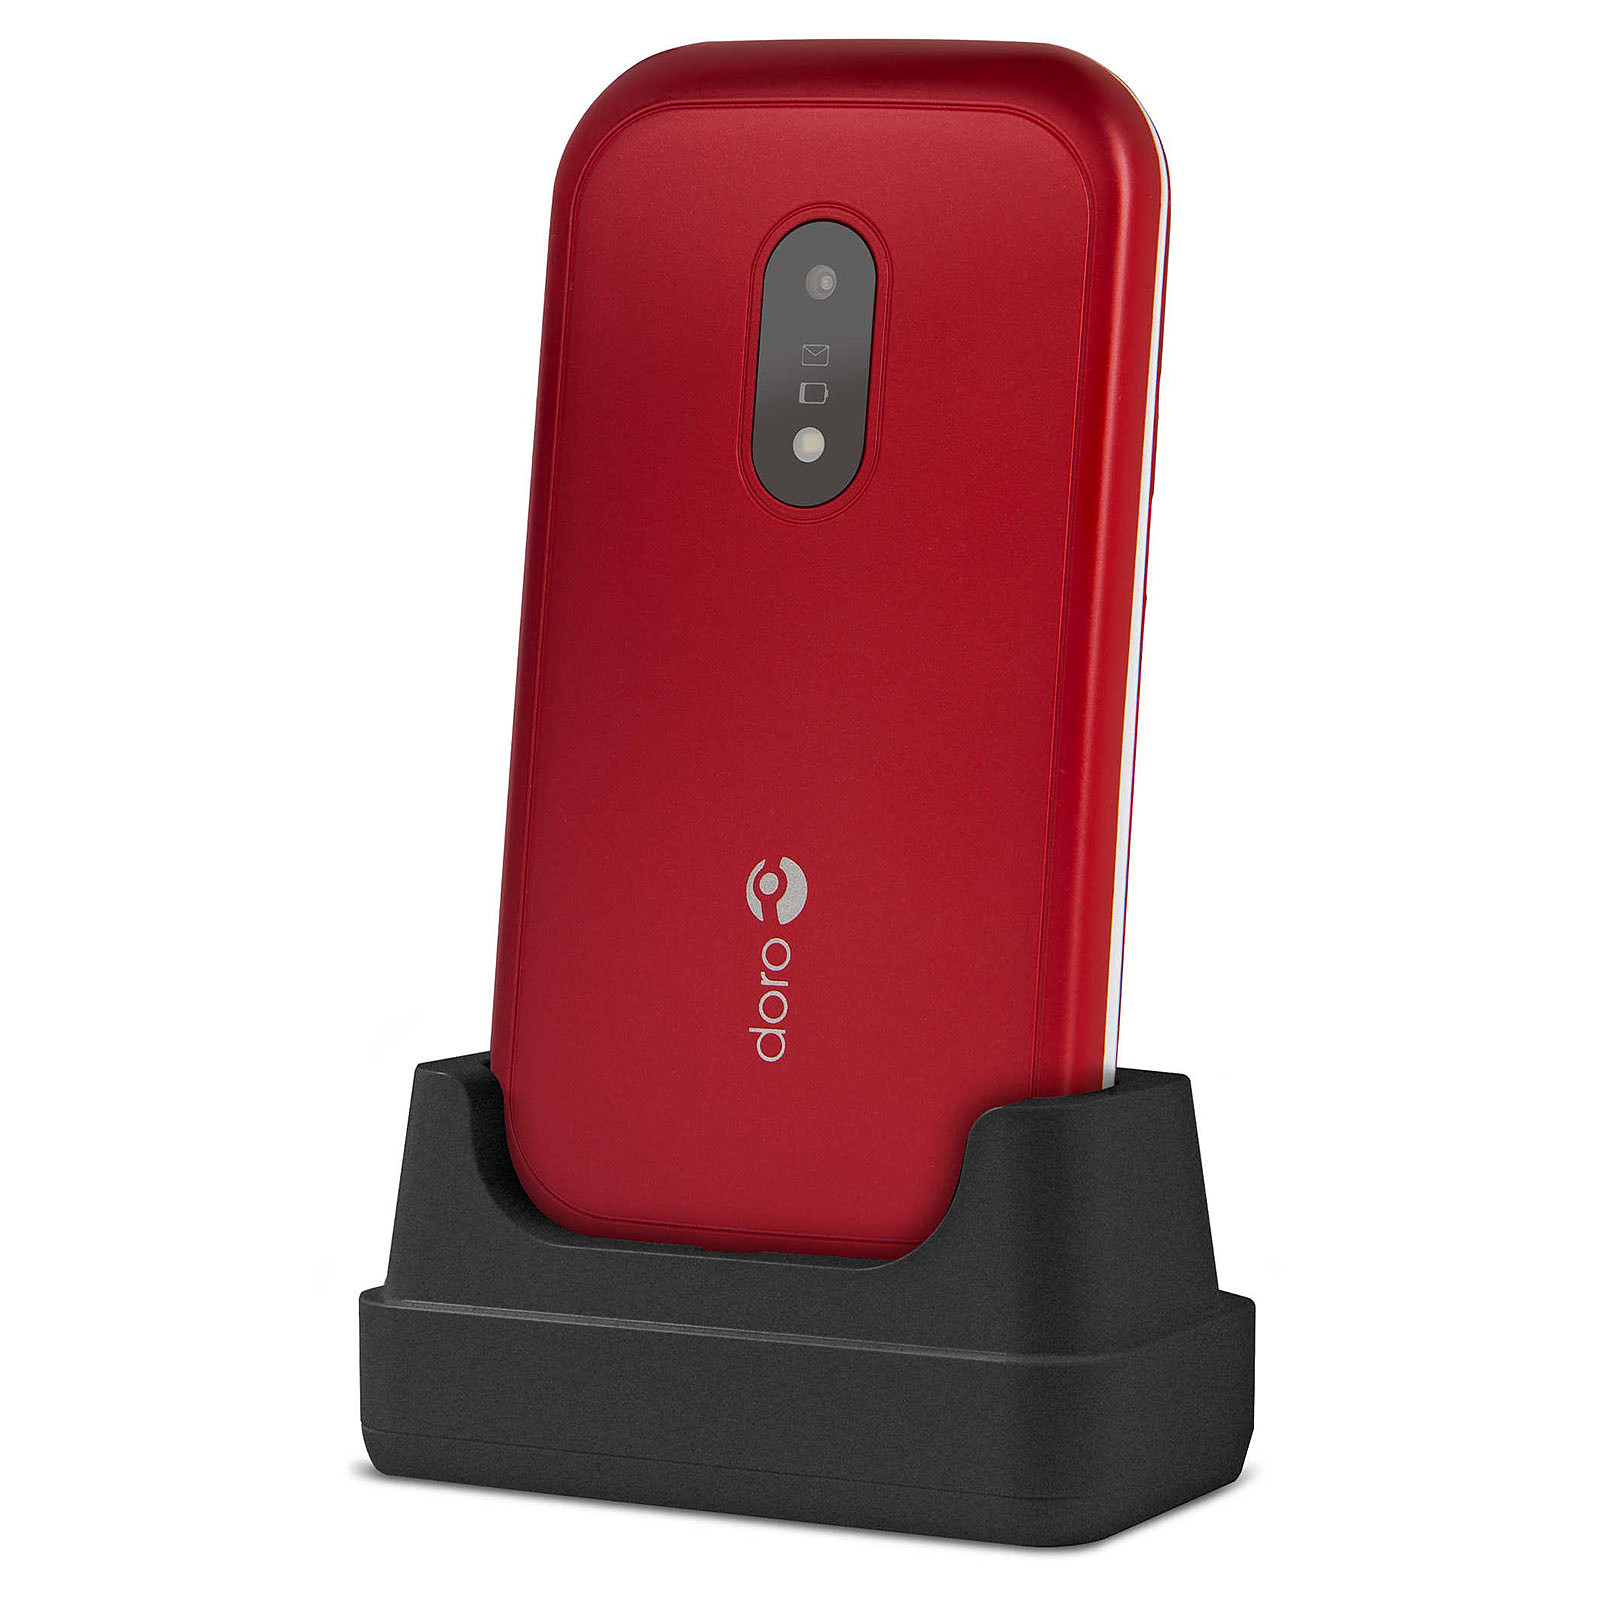 Doro 6040 Rouge - Mobile & smartphone Doro